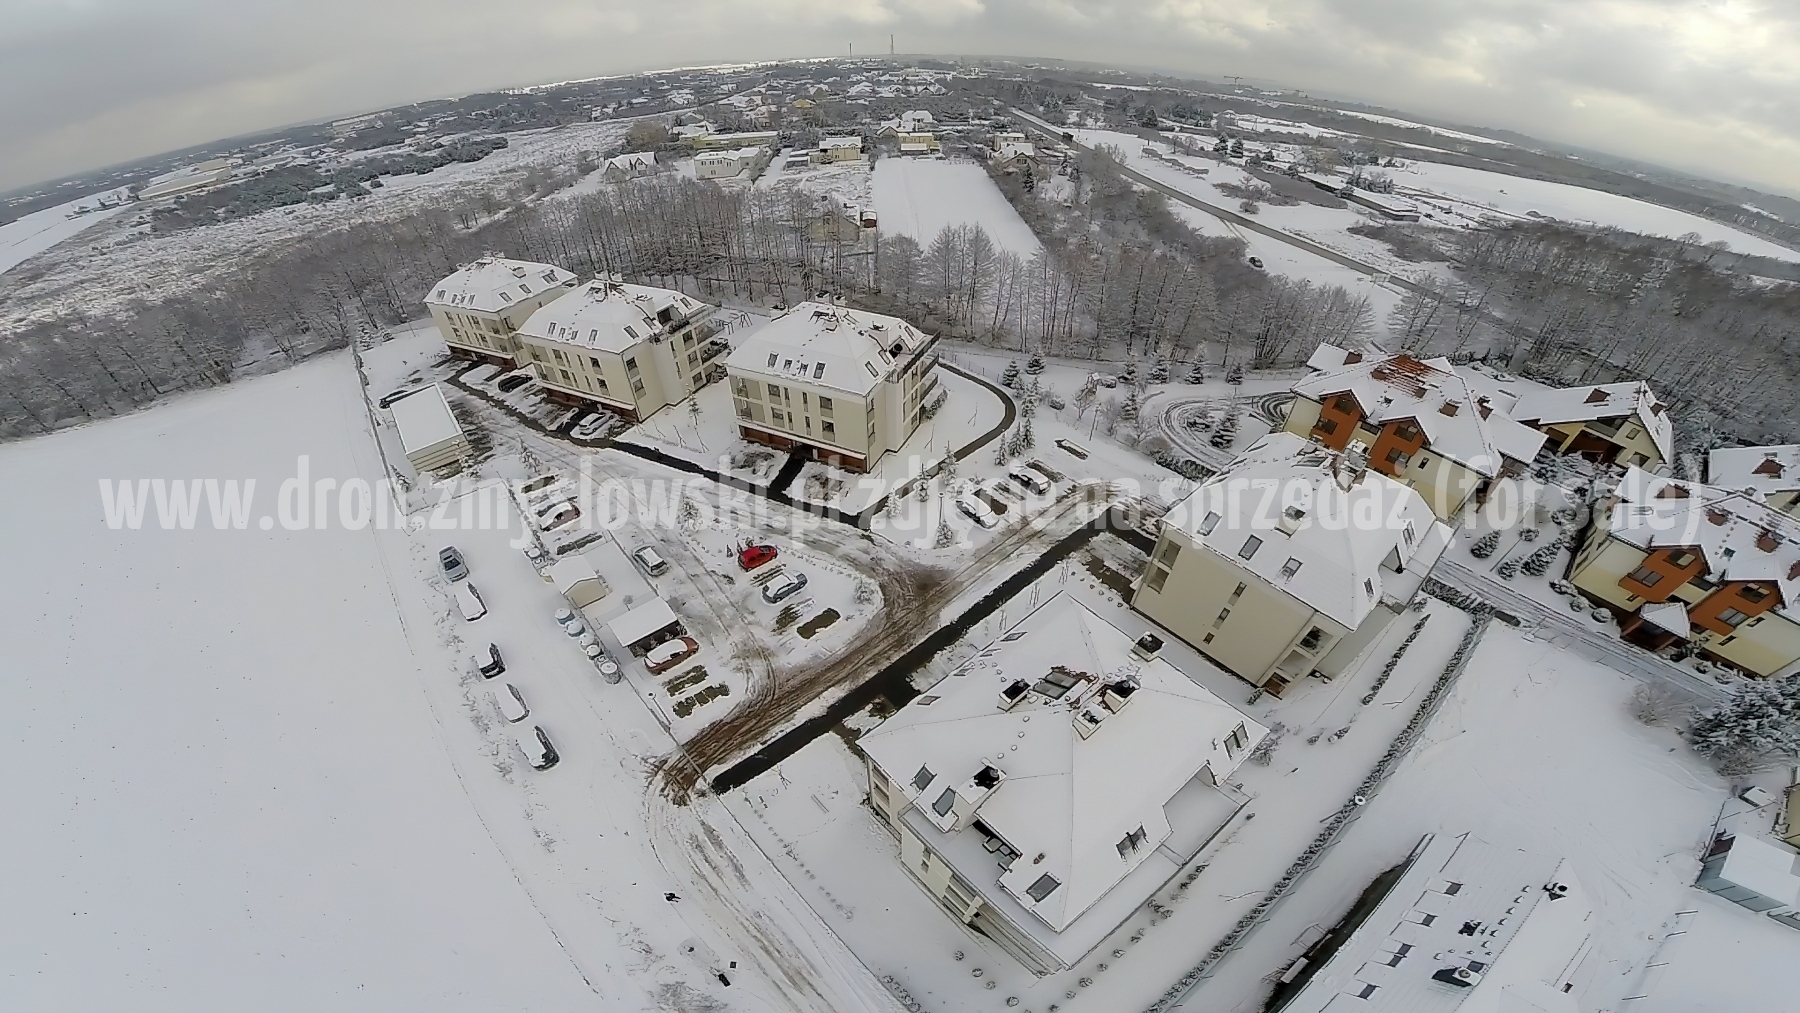 2015-02-04-dron-w-Niemczu-na-ul-Elizy-Orzeszkowej-zima-012-gigapixel-standard-width-3840px-SharpenAI-Motion